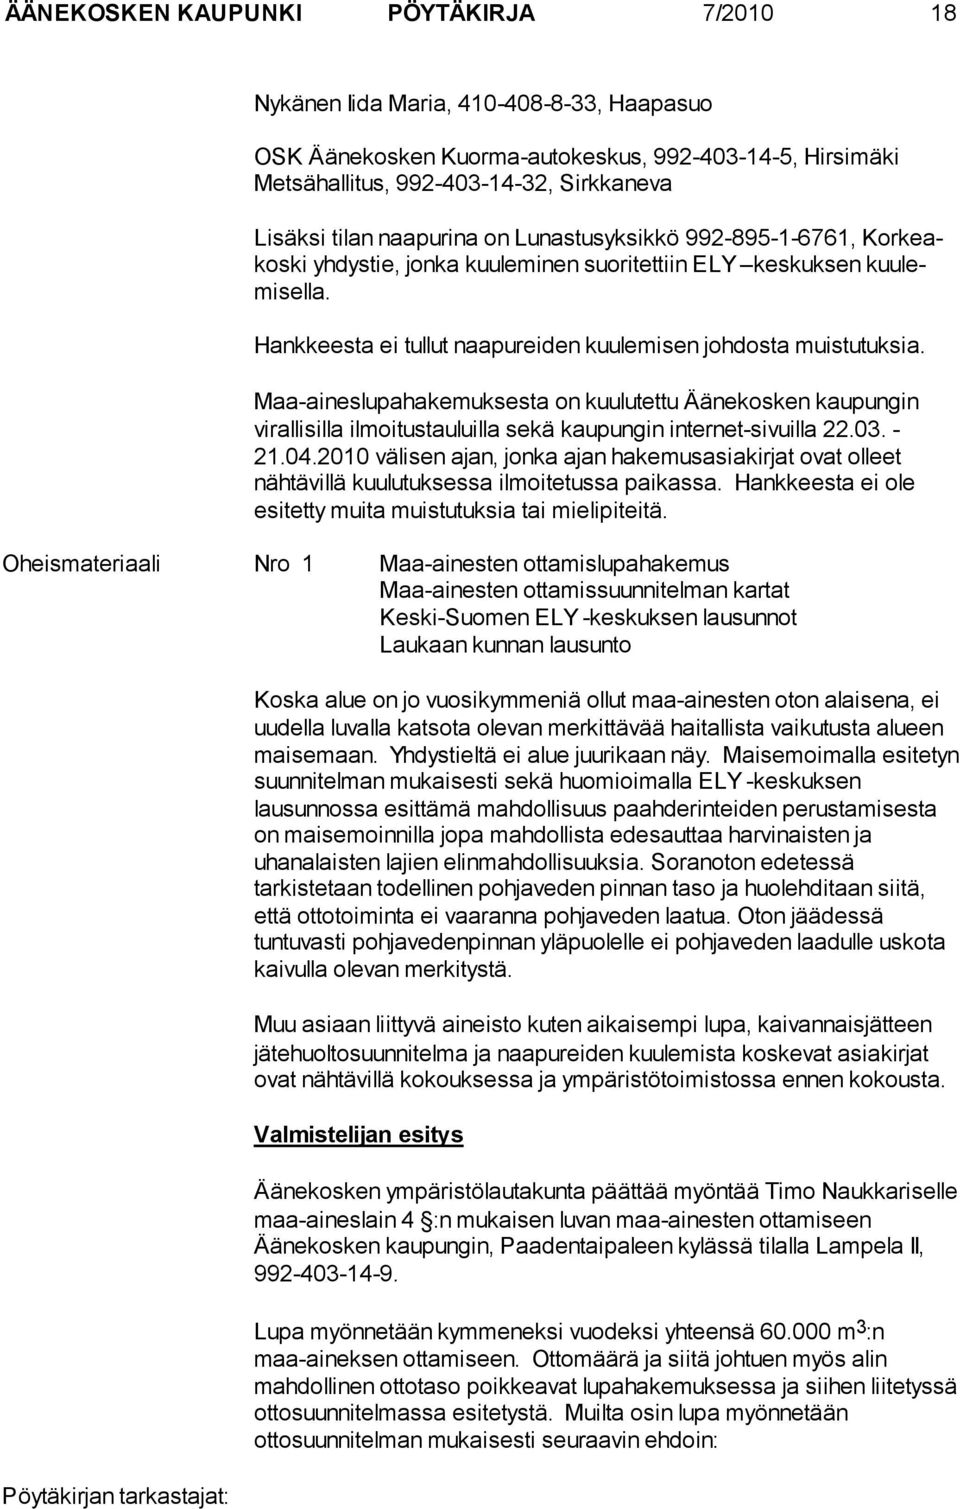 Maa-aineslupahakemuksesta on kuulutettu Äänekosken kaupungin virallisilla ilmoitustauluilla sekä kaupungin internet-sivuilla 22.03. - 21.04.